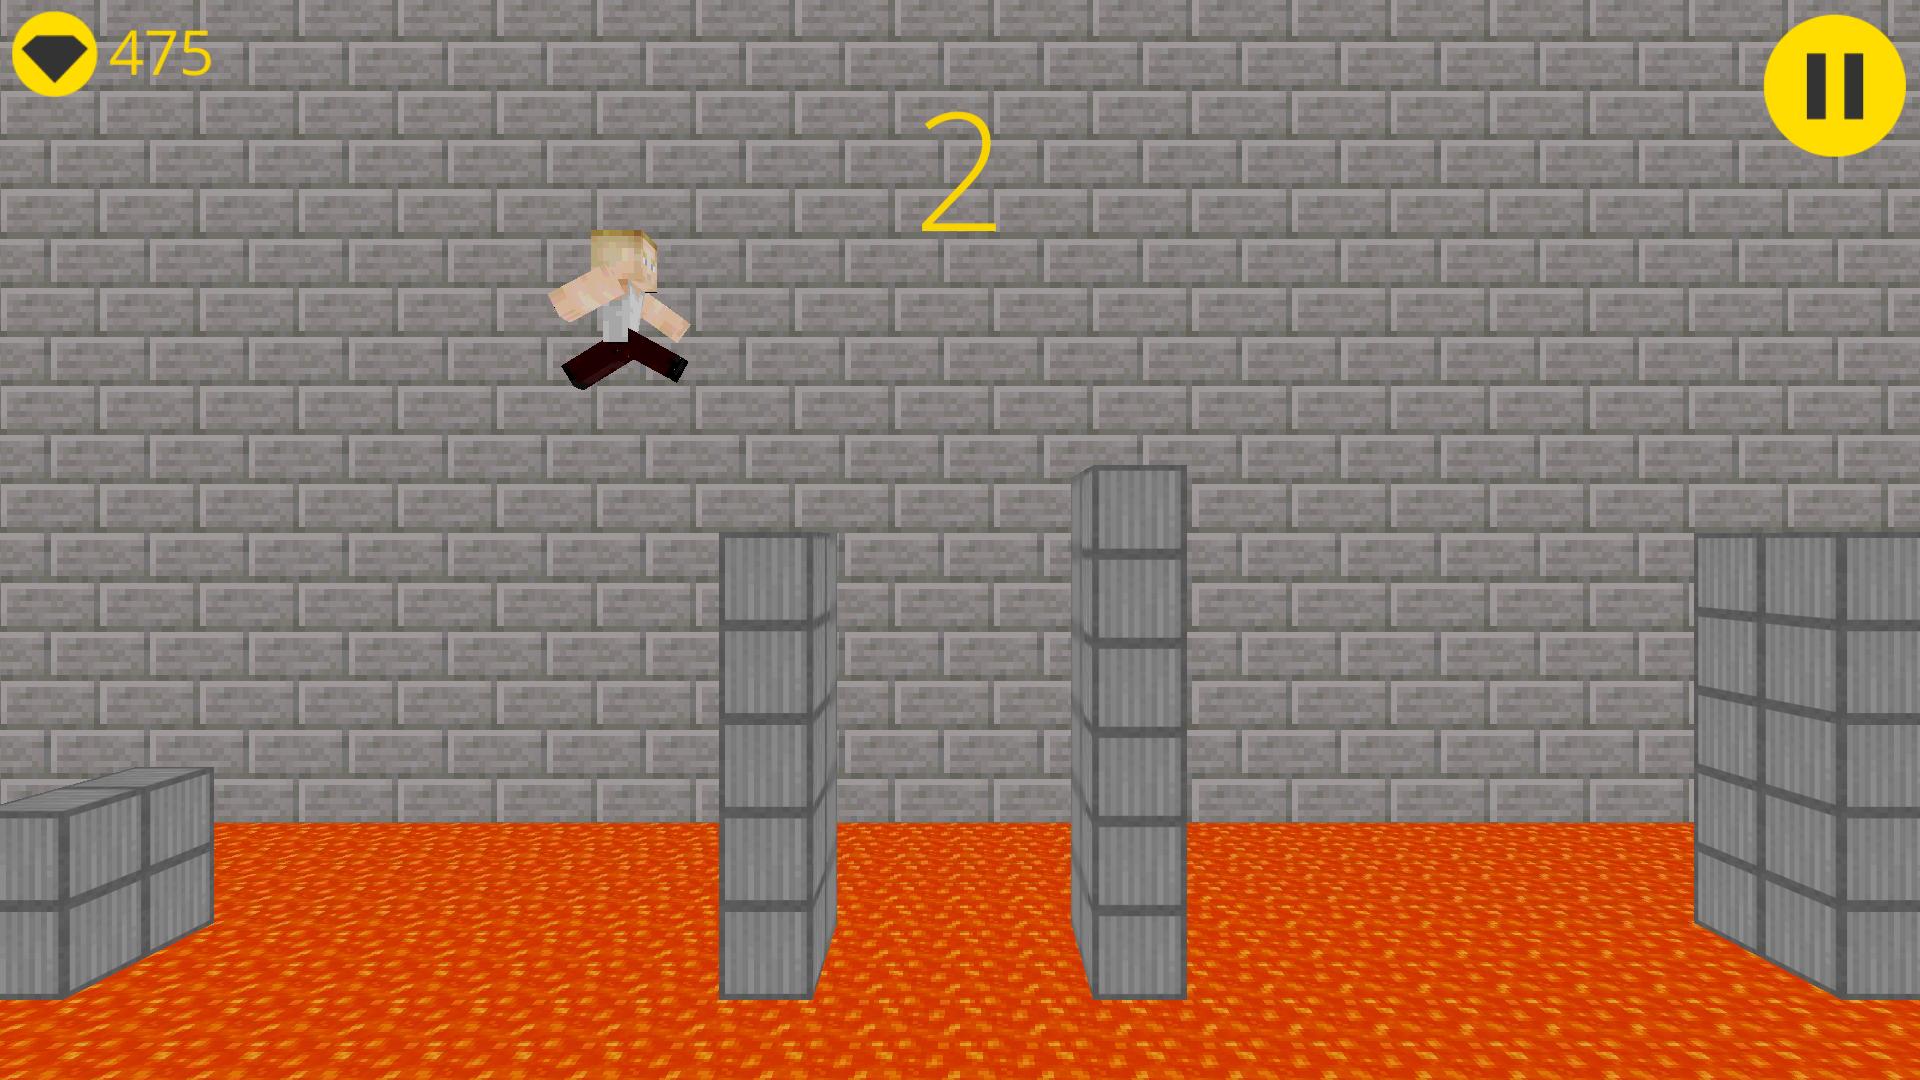 Игра прыгать по клеткам. Игра куб крафт 3д. Игра куб прыгает башня. Кликеры про прыганье под куб. Игра куб прыгает по стенам поднимаясь выше.